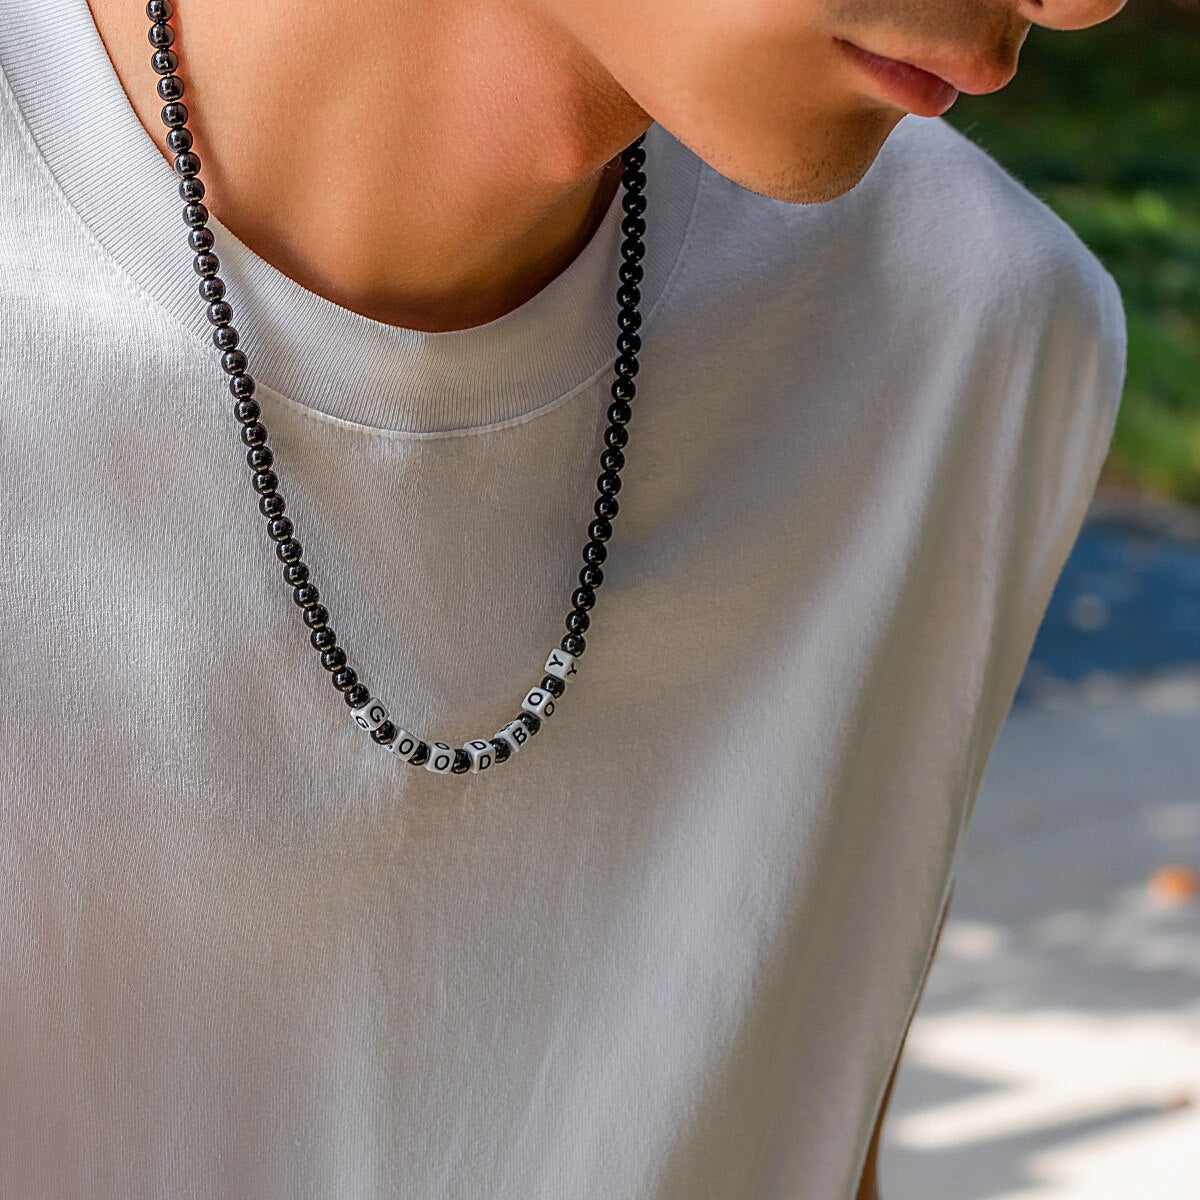 Ce collier en perles noires, avec ses lettres blanches formant "GOOD BOY", évoque l'élégance brute et l'esprit aventureux des marins sillonnant les vastes océans